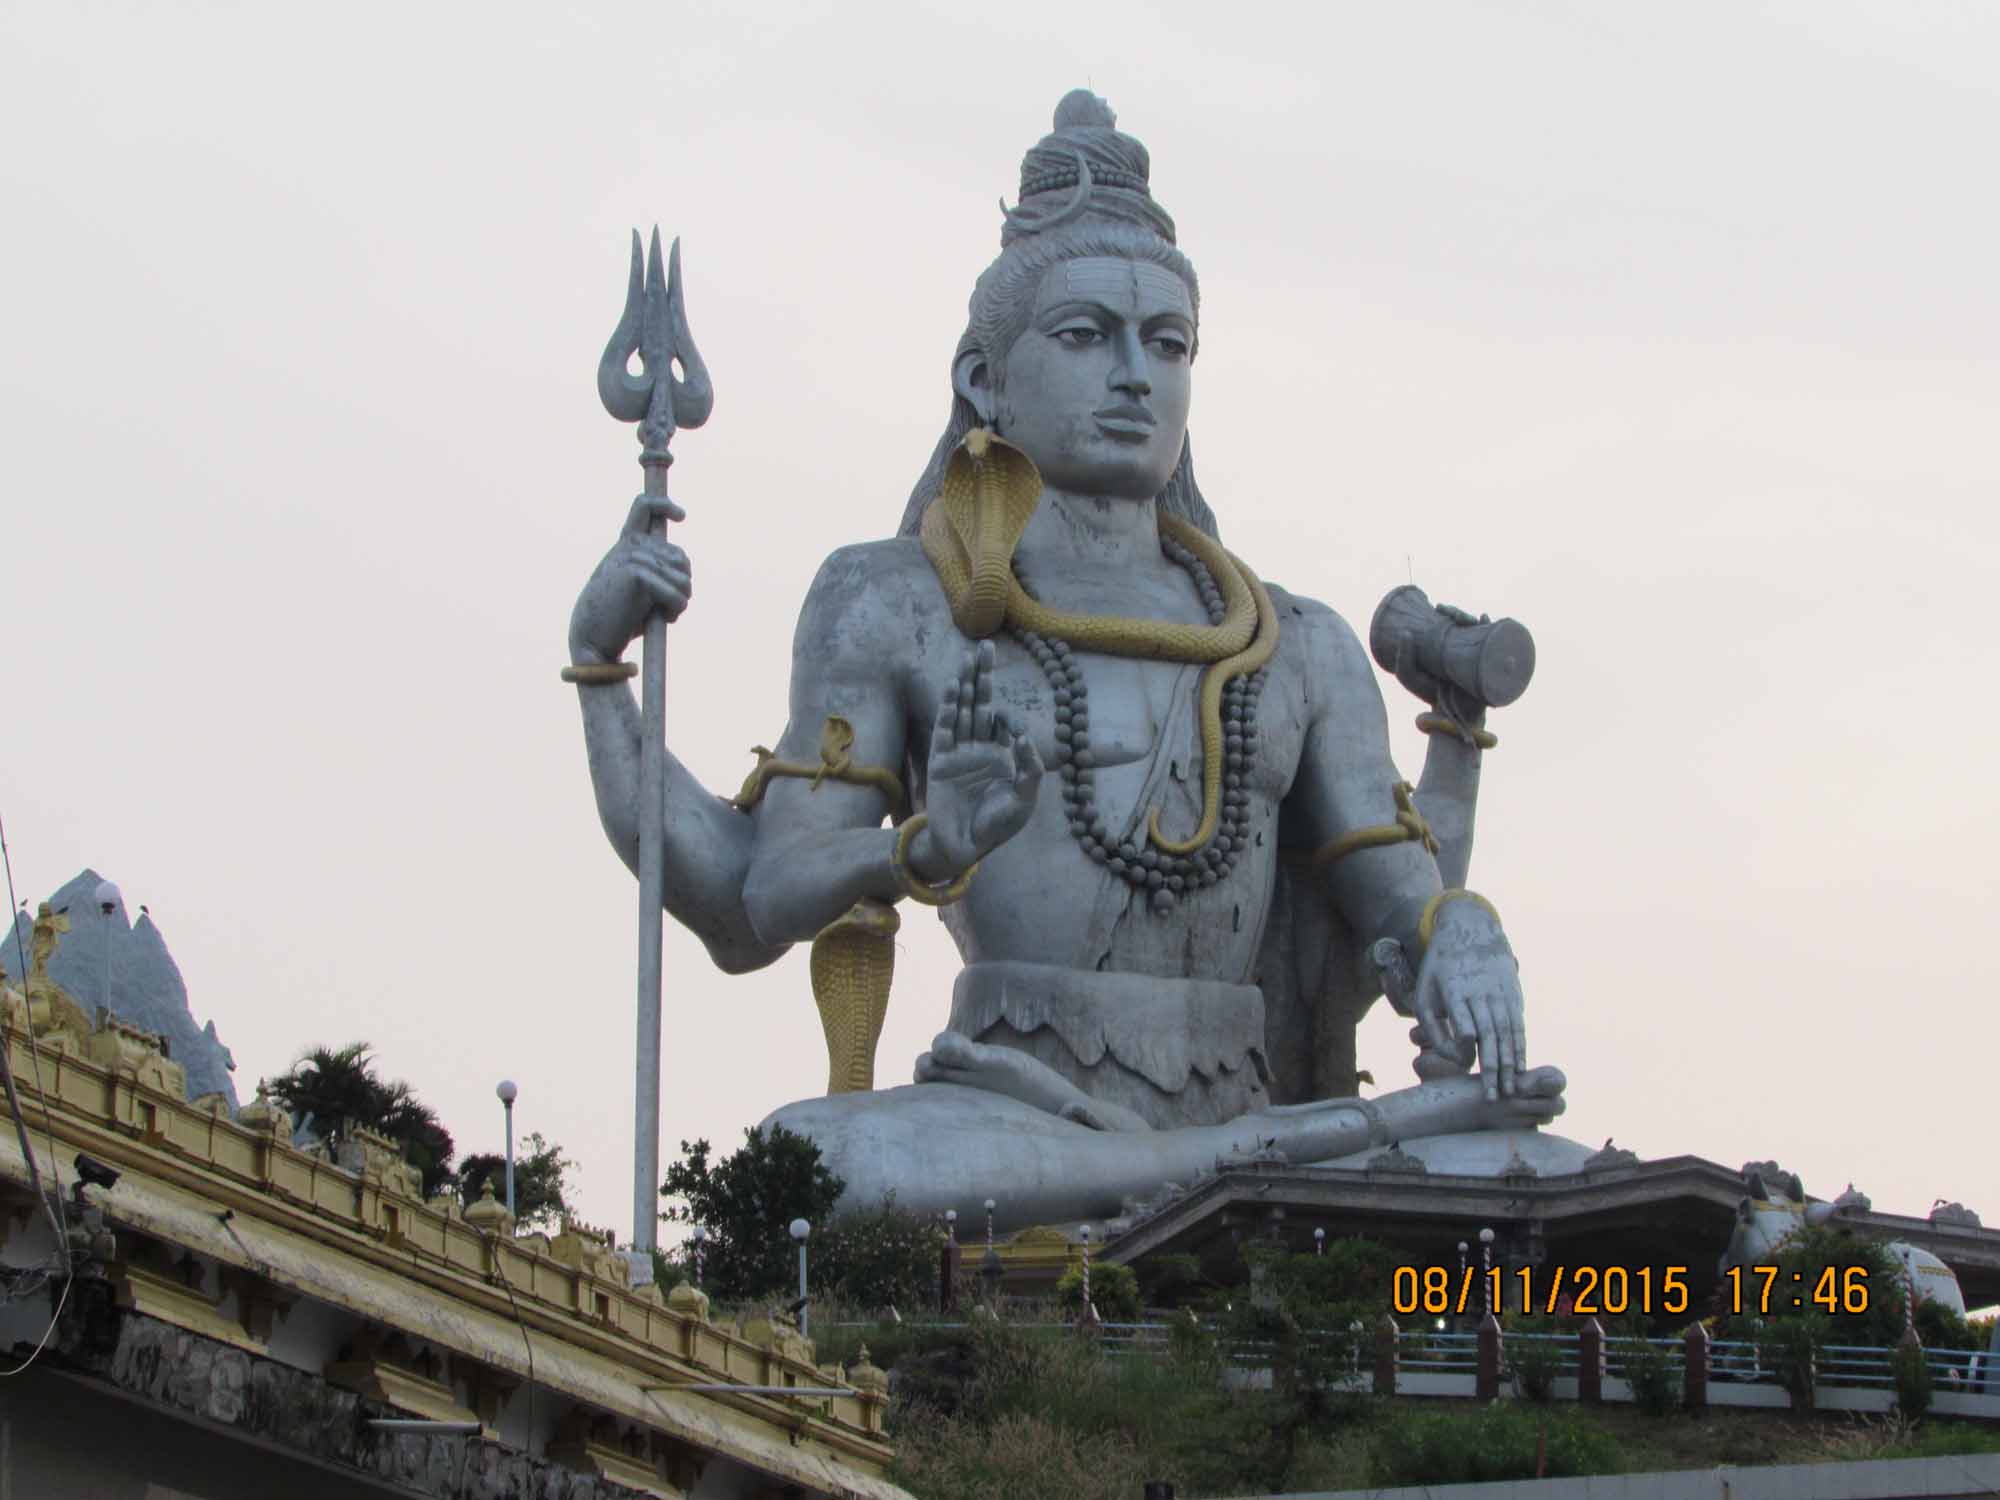 Scenic Beauty and Spirituality at its peak – Murudeshwar, Karnataka, India